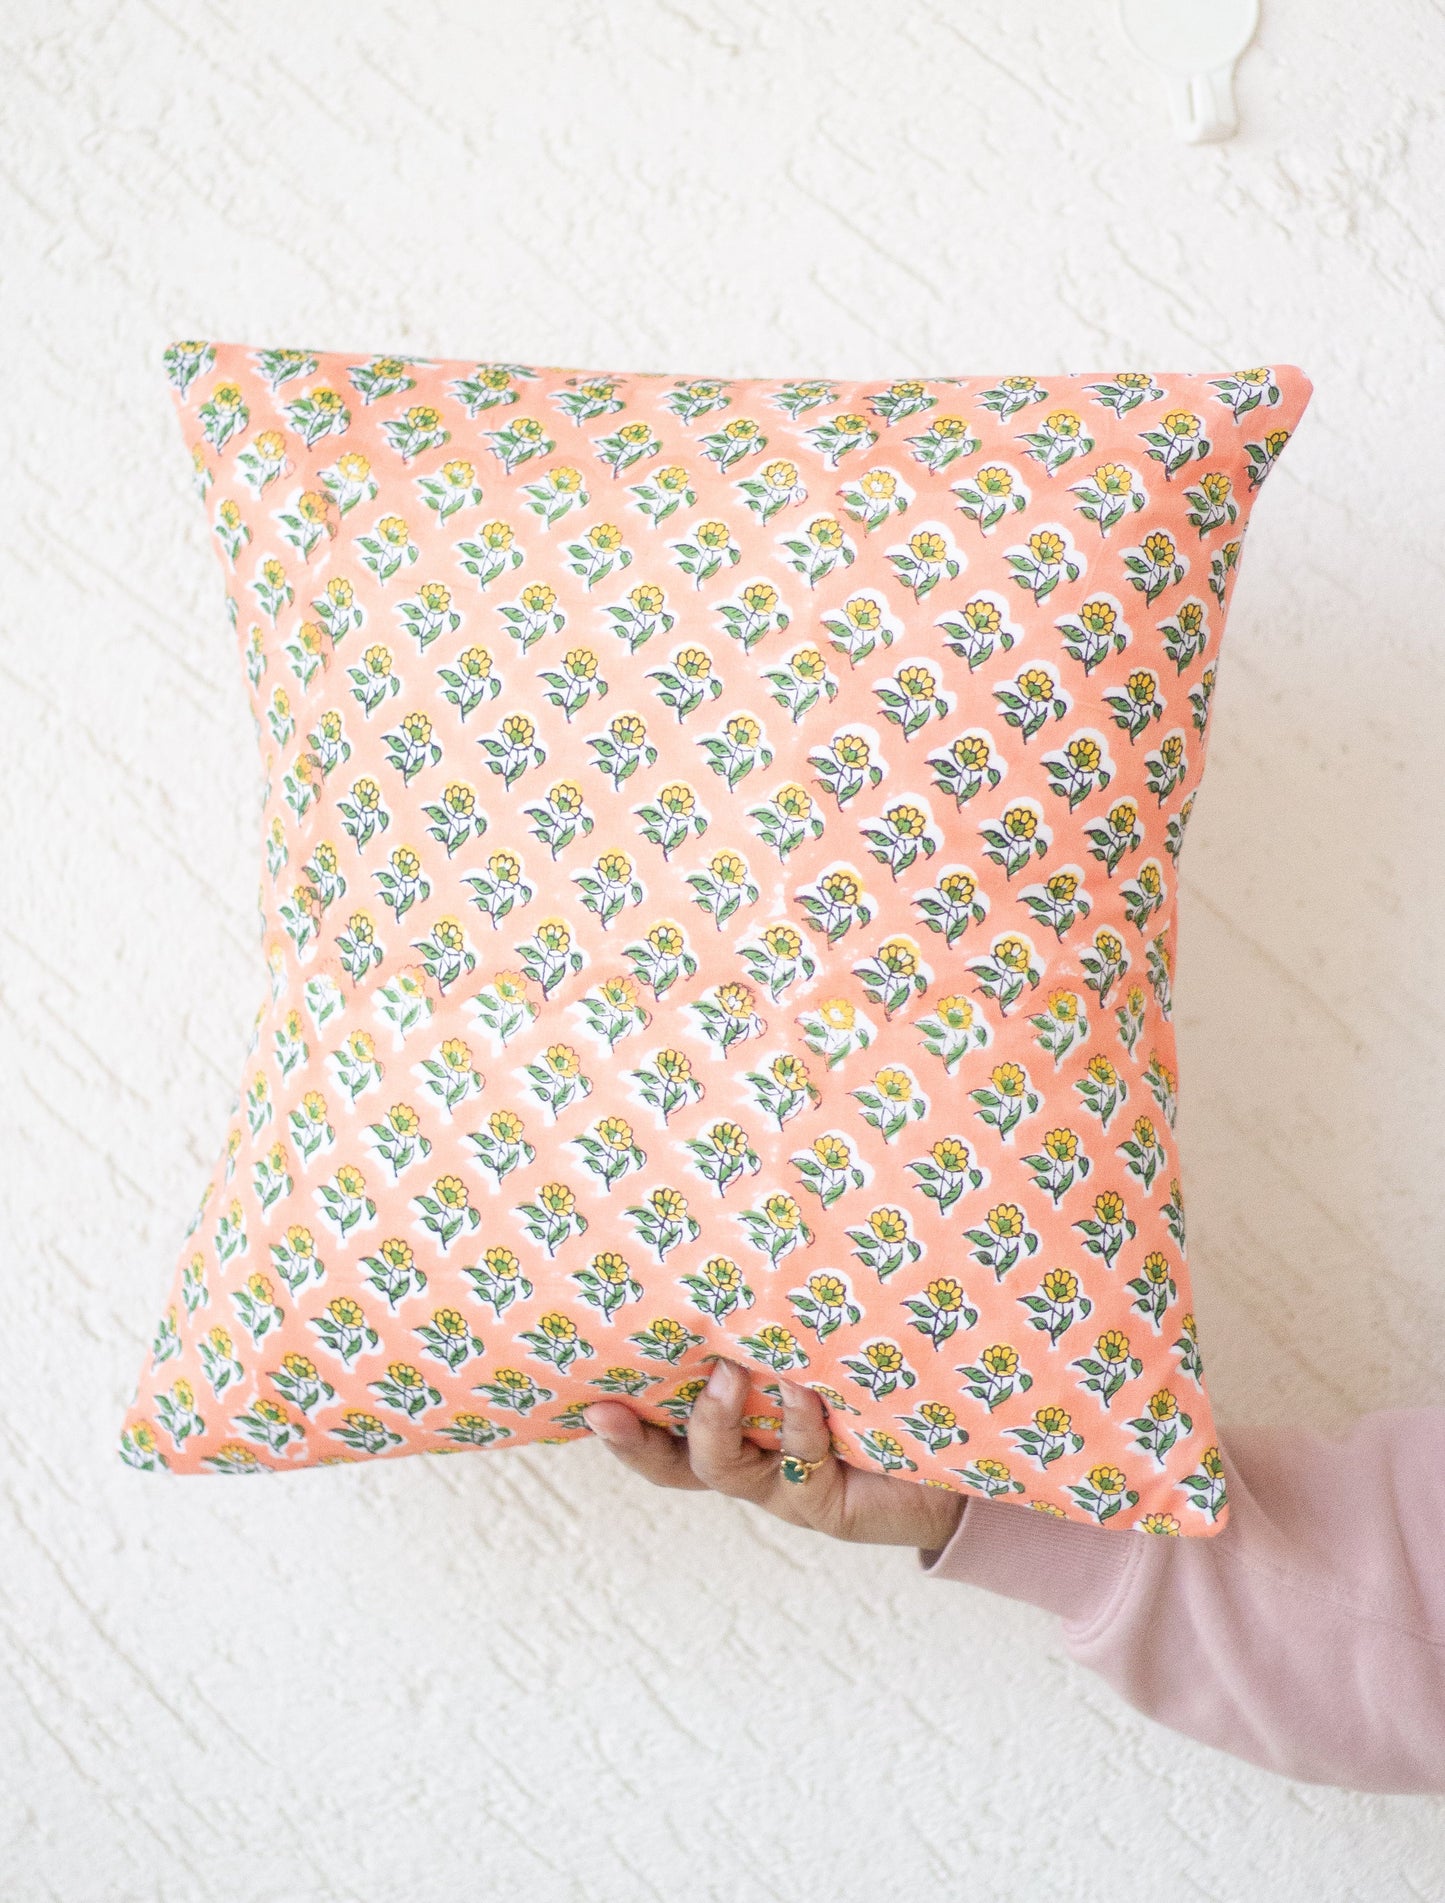 Block print decorative cushion covers - Peach floral cushion covers